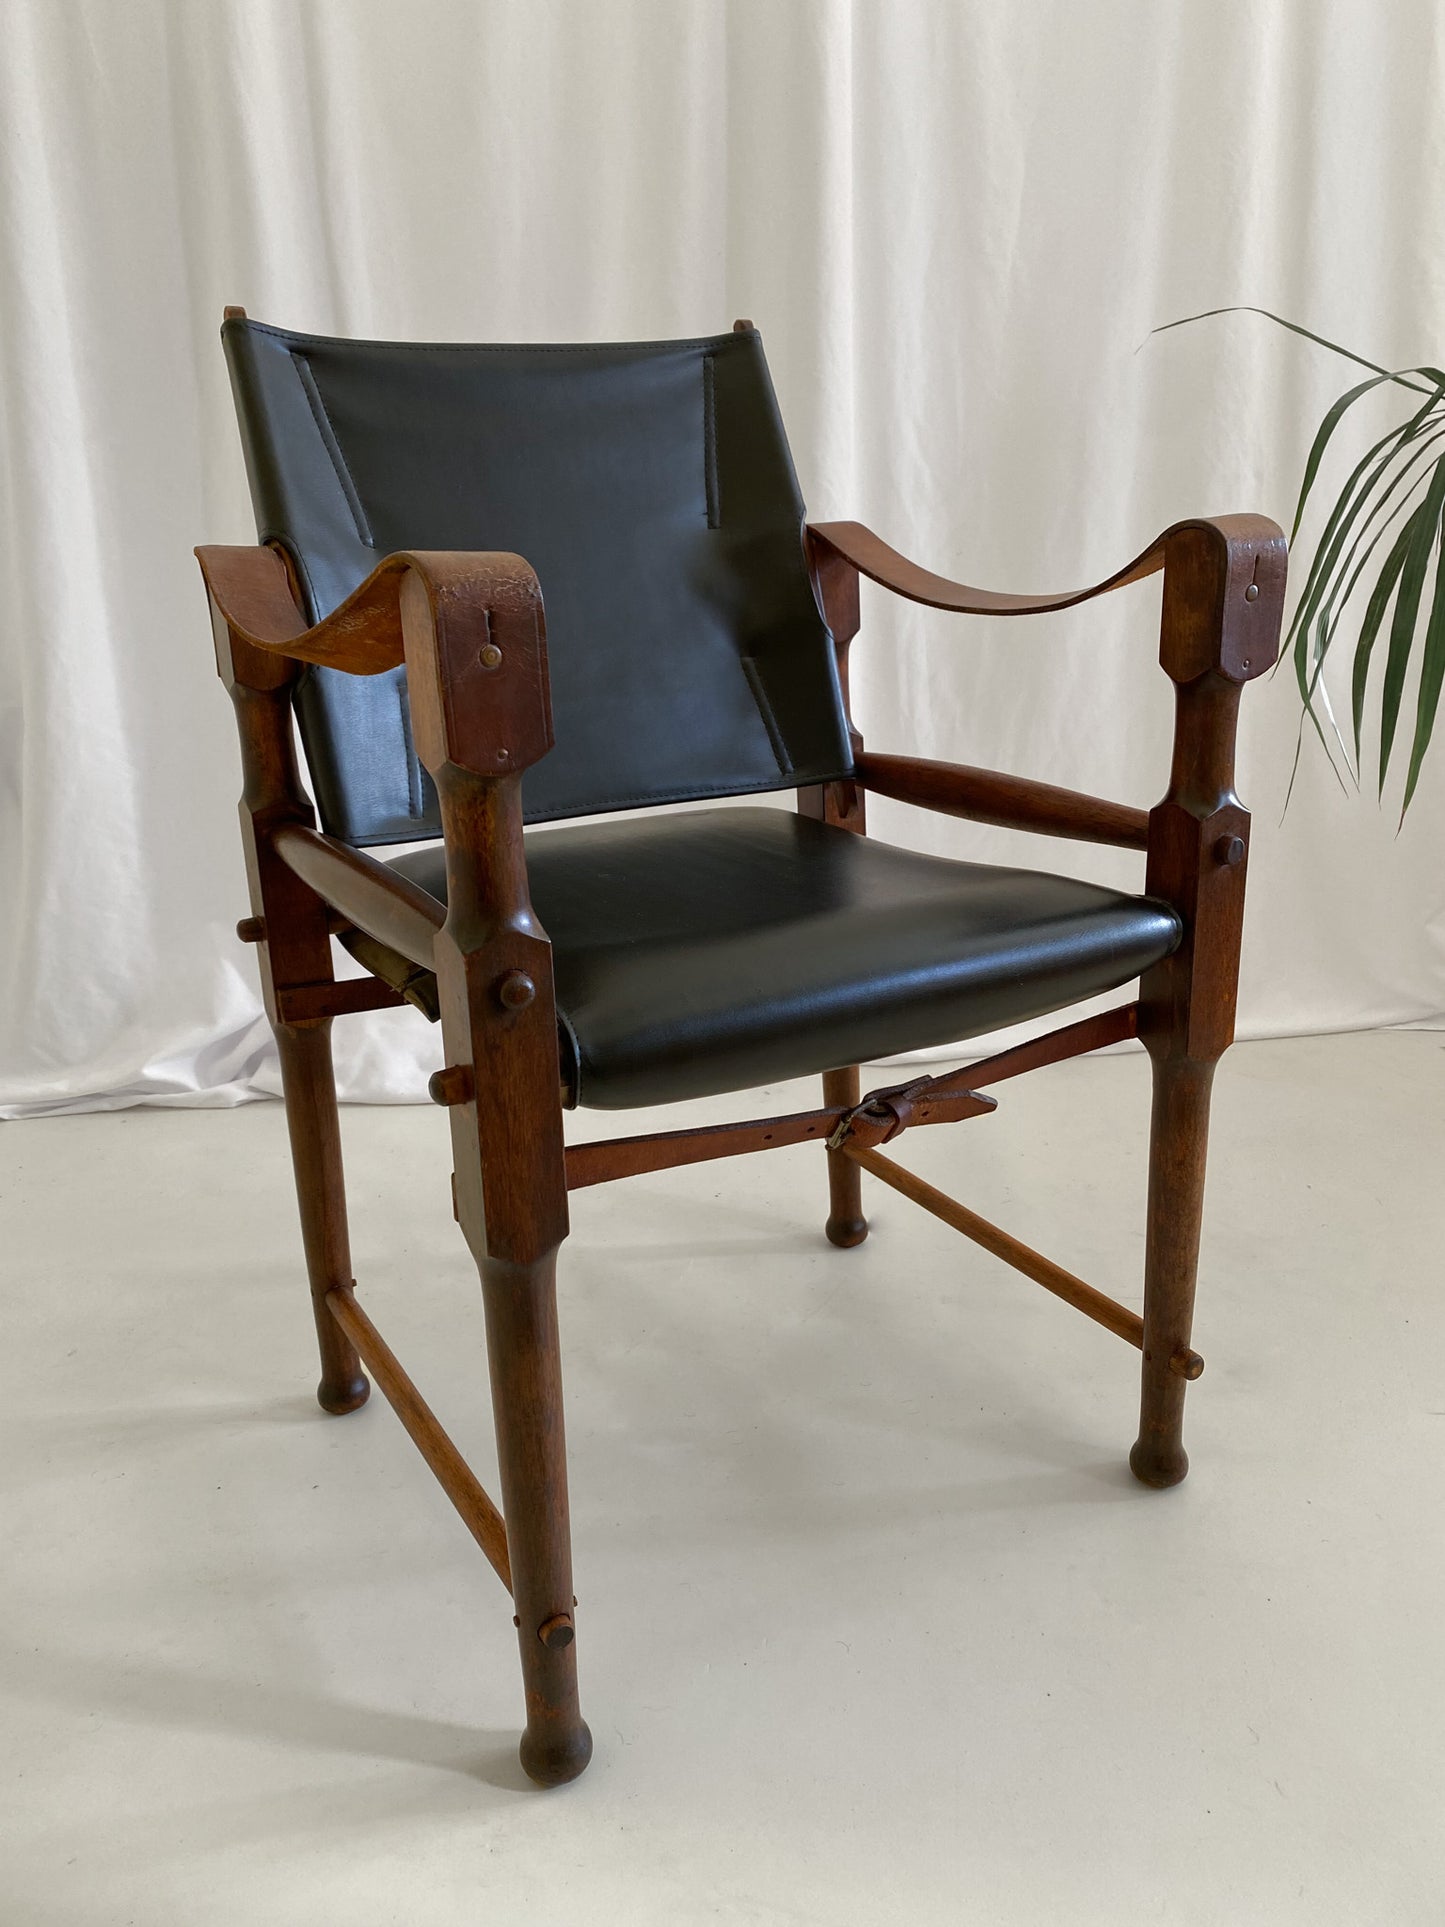 Michael Hirst Black Safari Chair circa 1960's